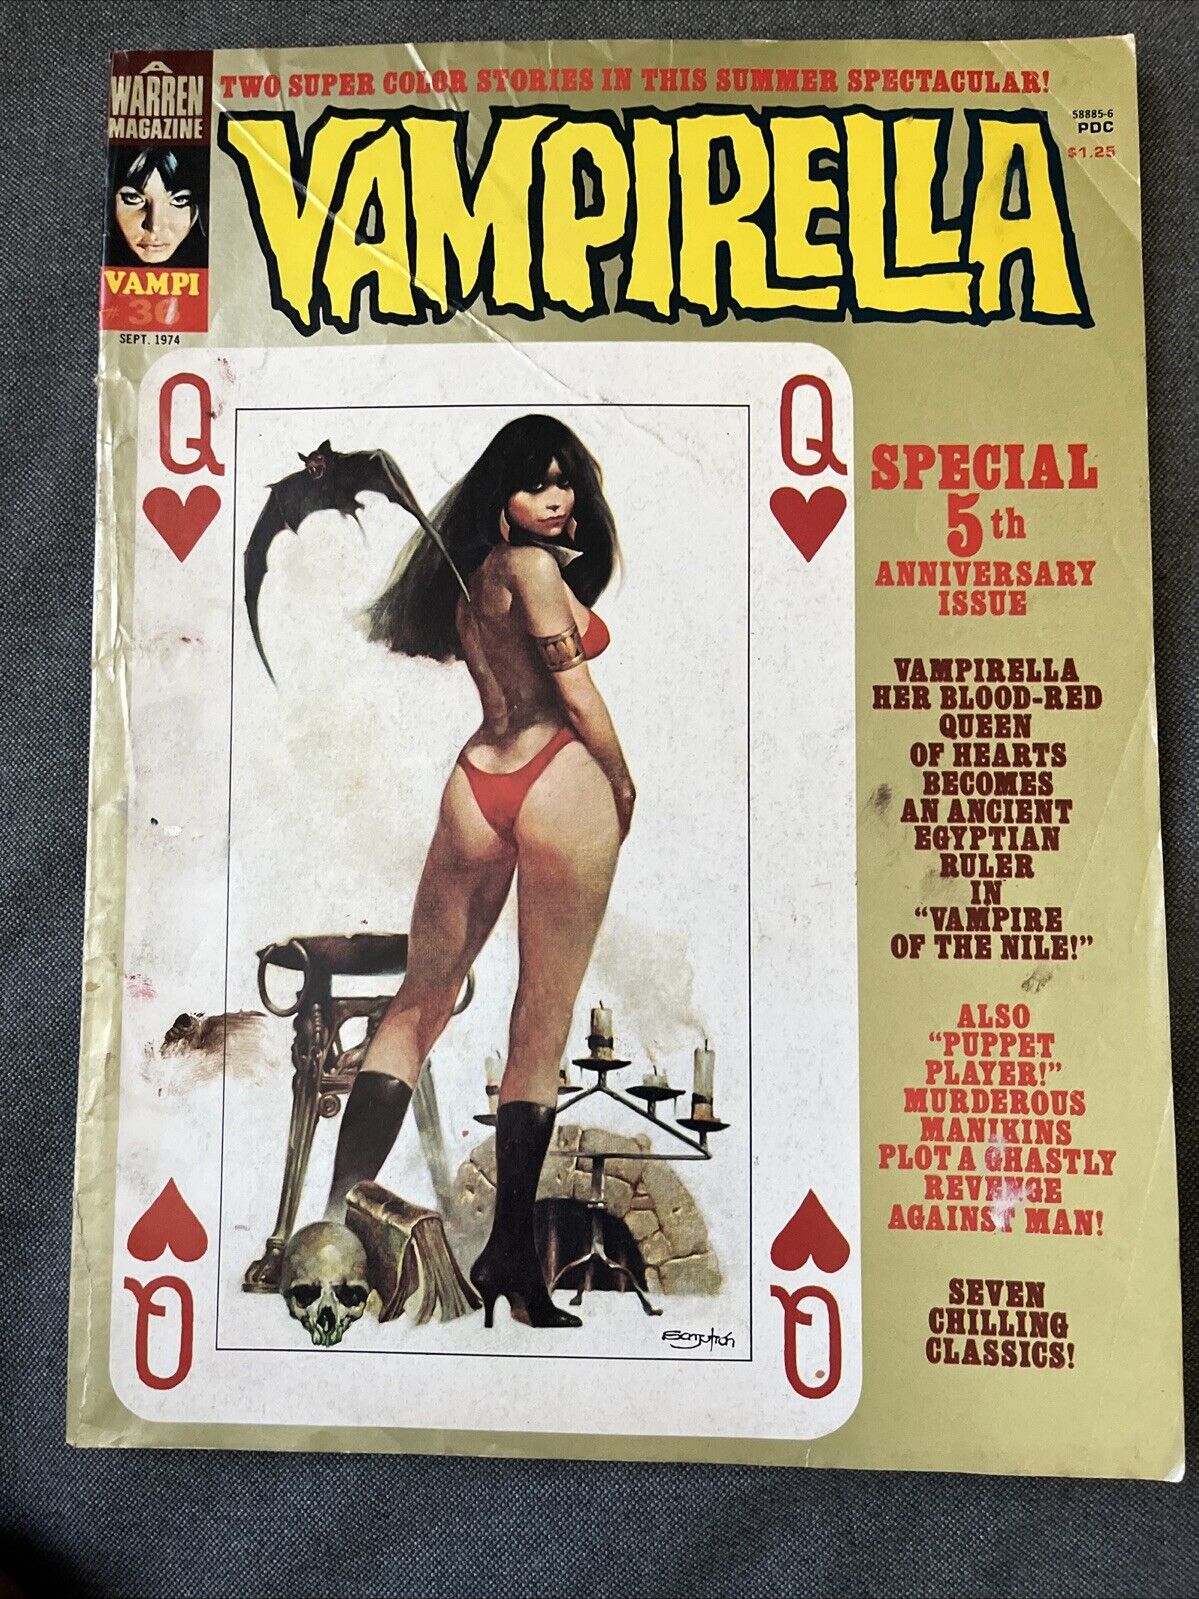 Vampirella #36 September 1974-Special 5th Anniversary Issue